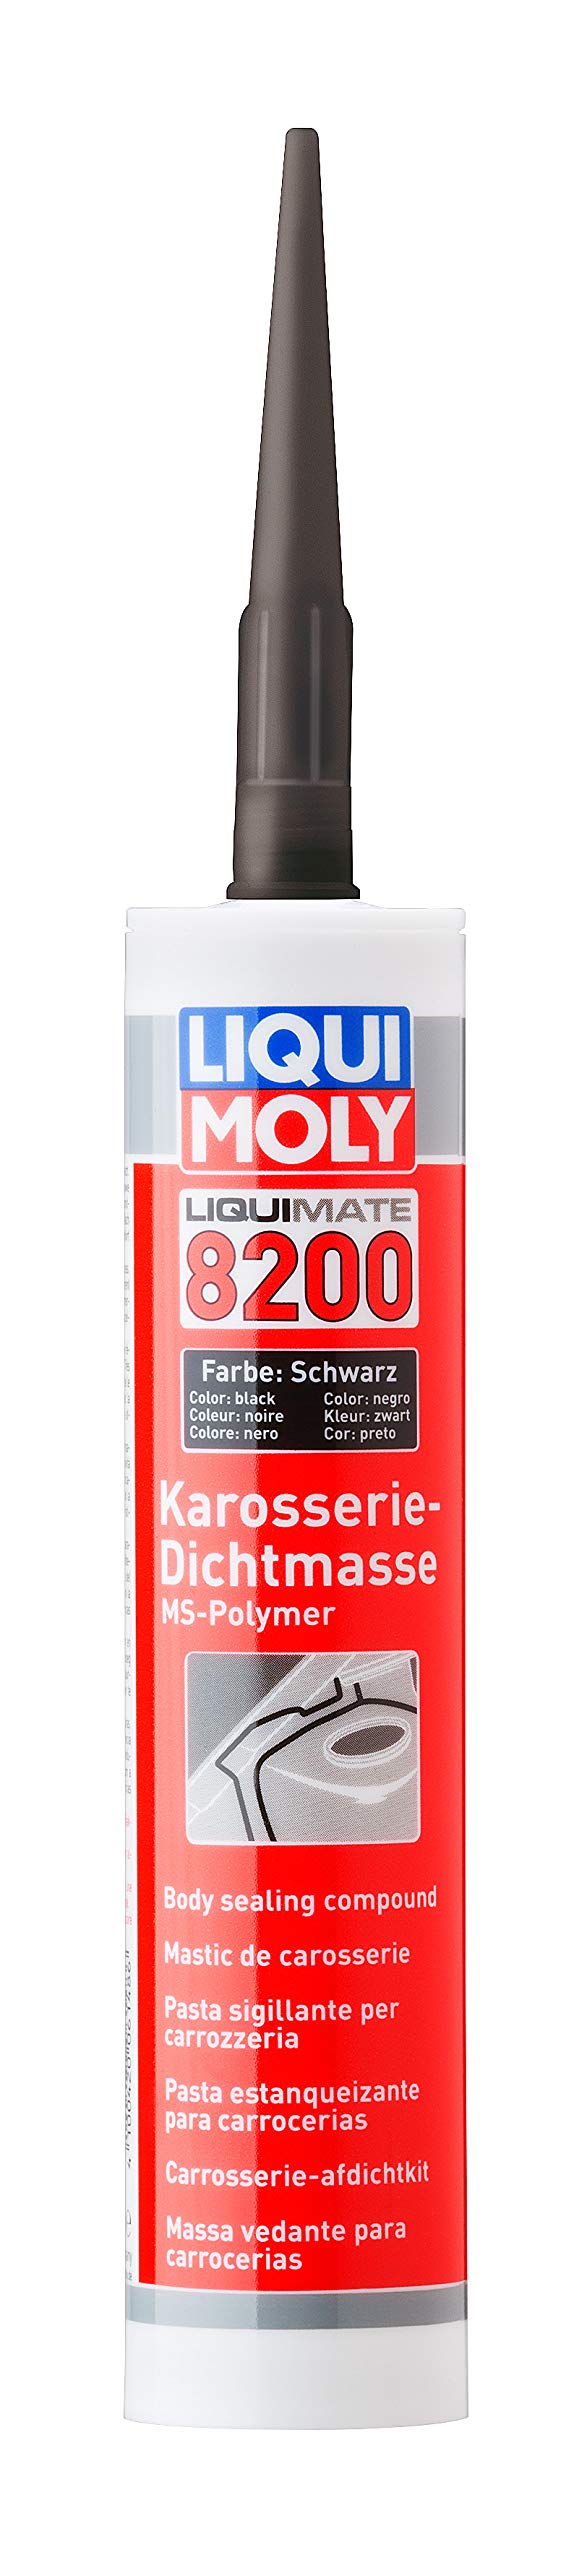 LIQUI MOLY Liquimate 8200 MS Polymer schwarz | 290 ml | Karosserieschutz | Dichtstoff | Unterbodenschutz | Art.-Nr.: 6148 von Liqui Moly